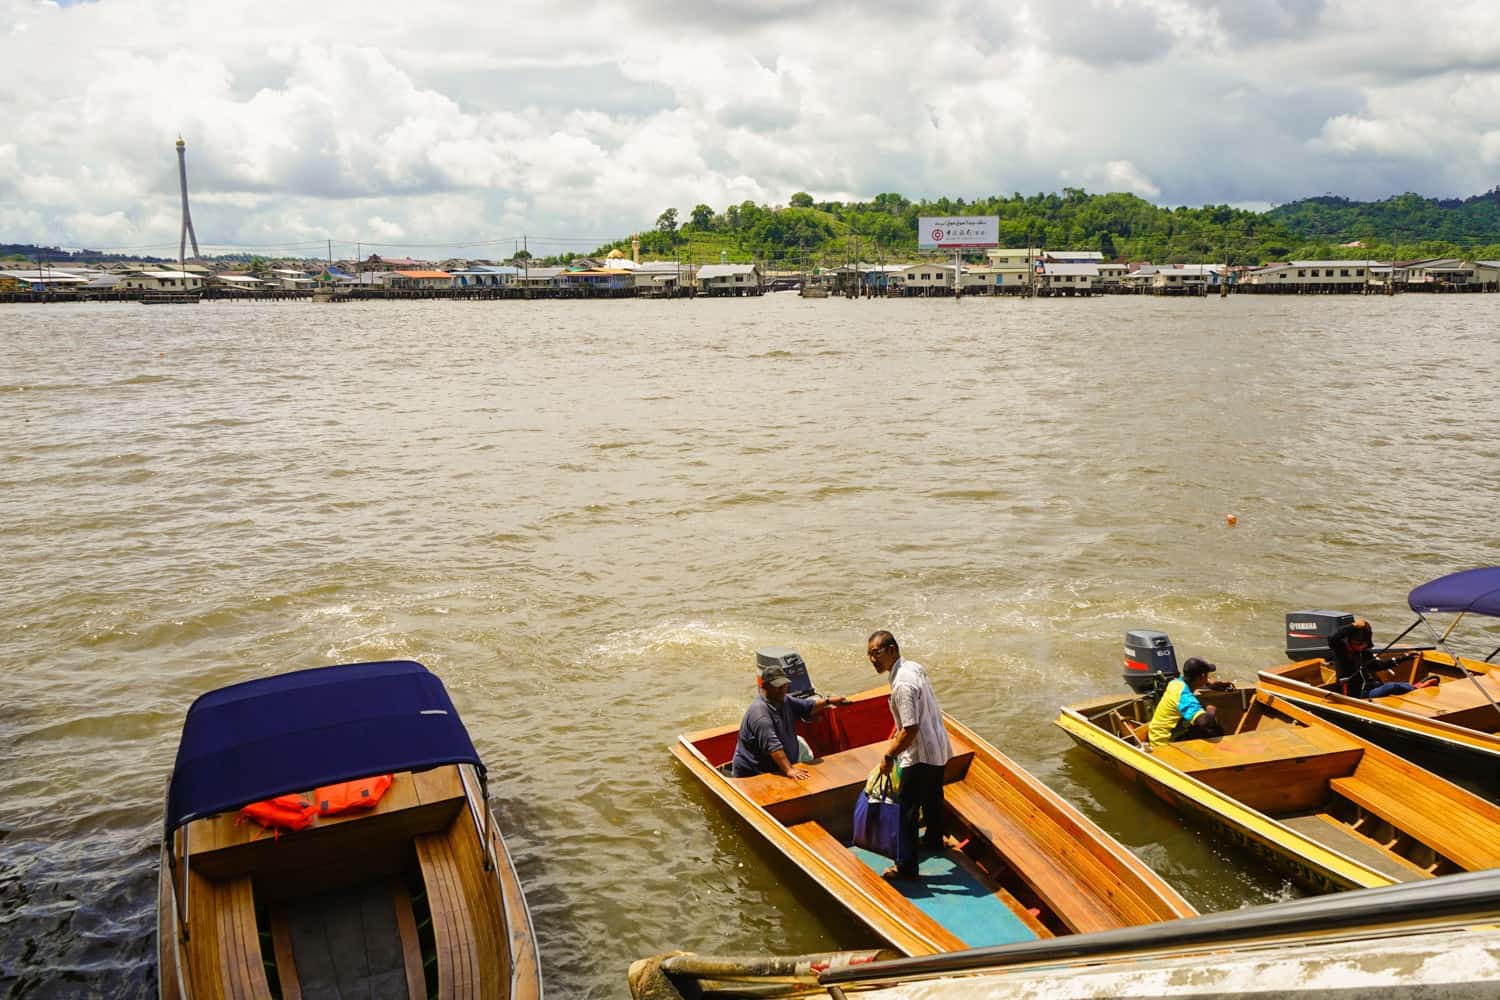 Boats in Bandar Seri Begawan